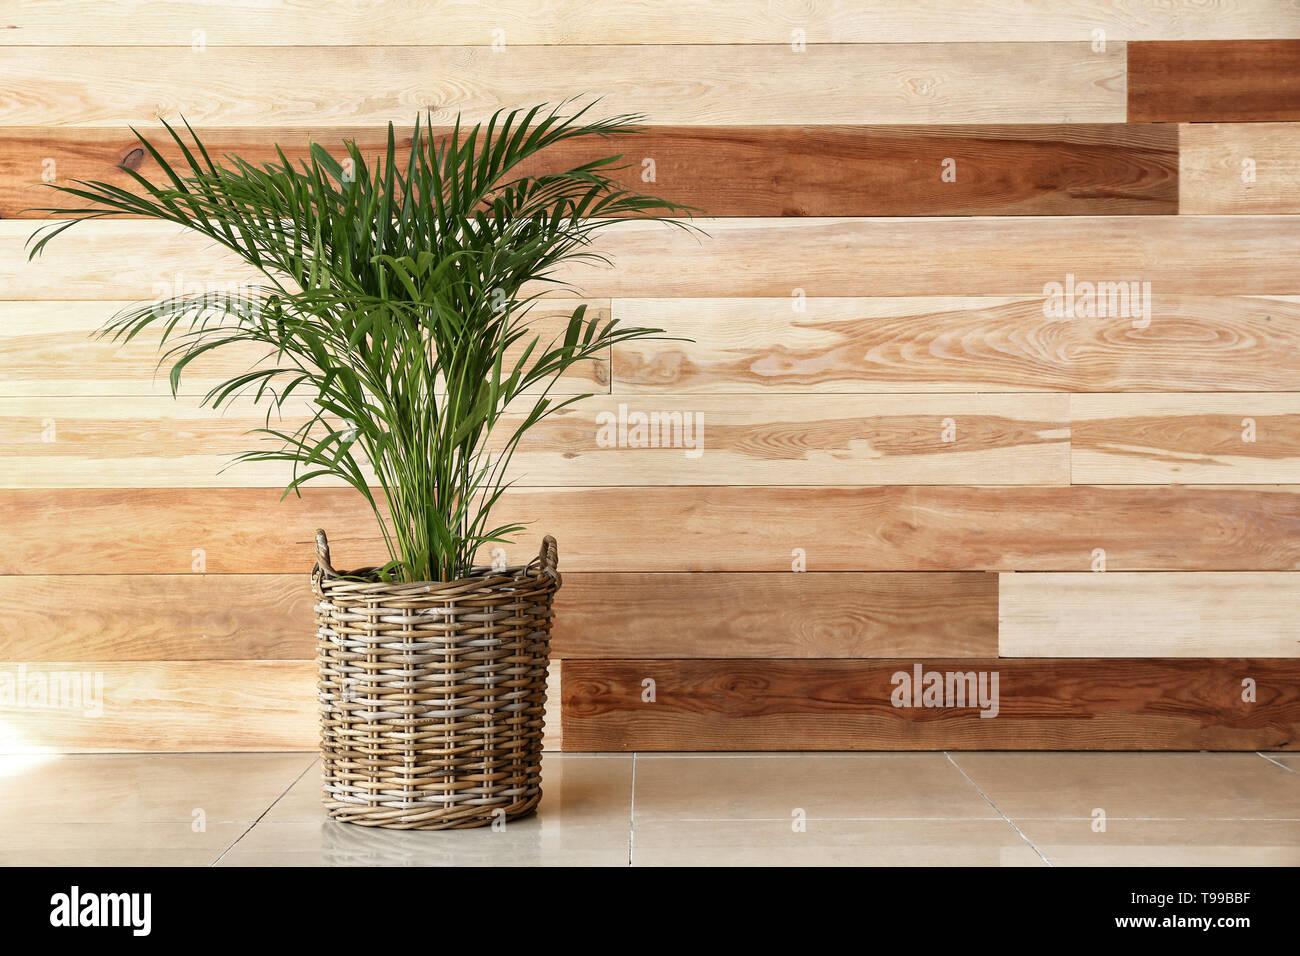 Decorative Areca palm near wooden wall Stock Photo